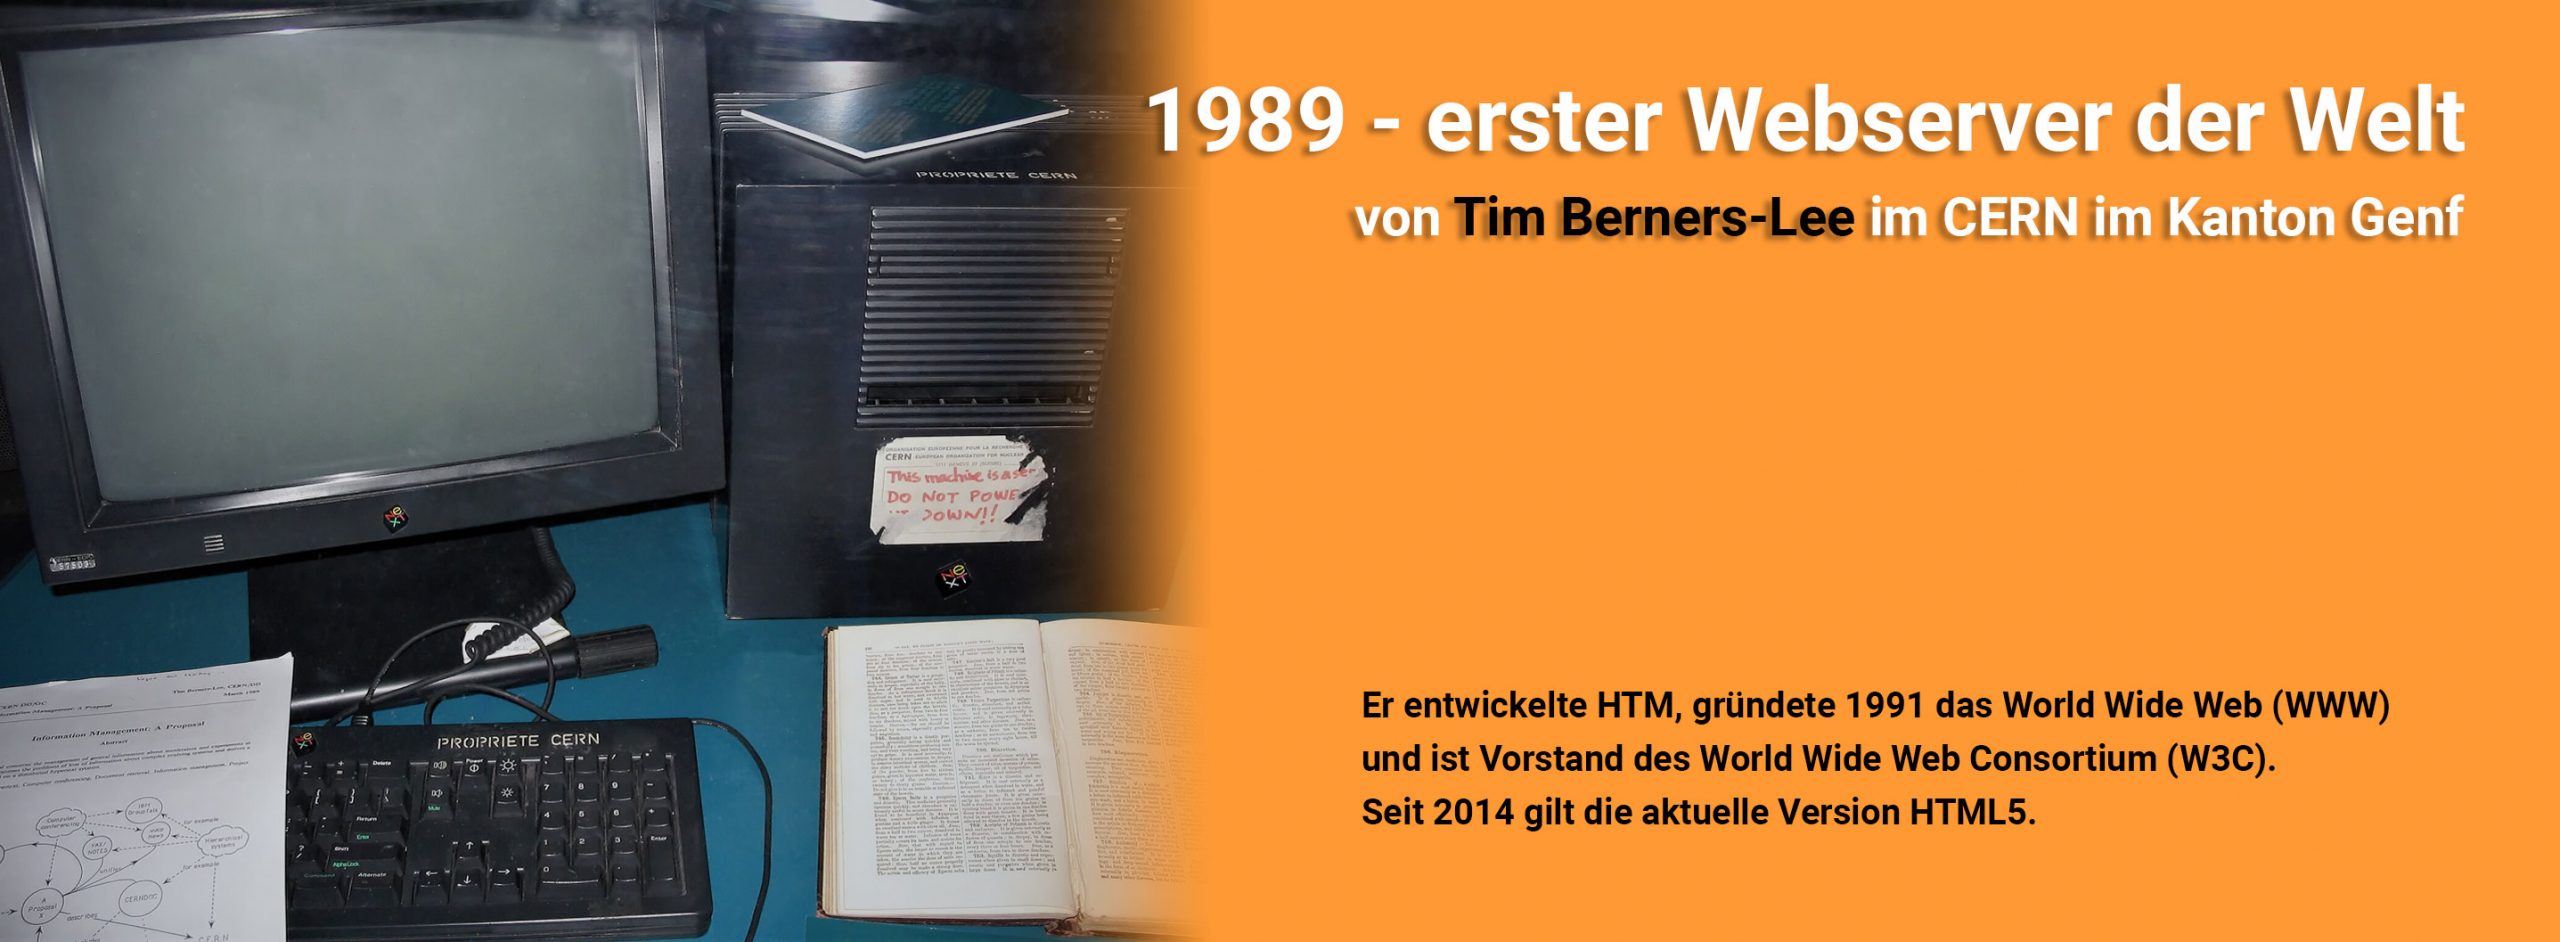 Erster Webserver der Welt, entwickelt und implementiert von Tim Berners-Lee auf einem NeXTcube im CERN. (heute im Science Museum in London ausgestellt)